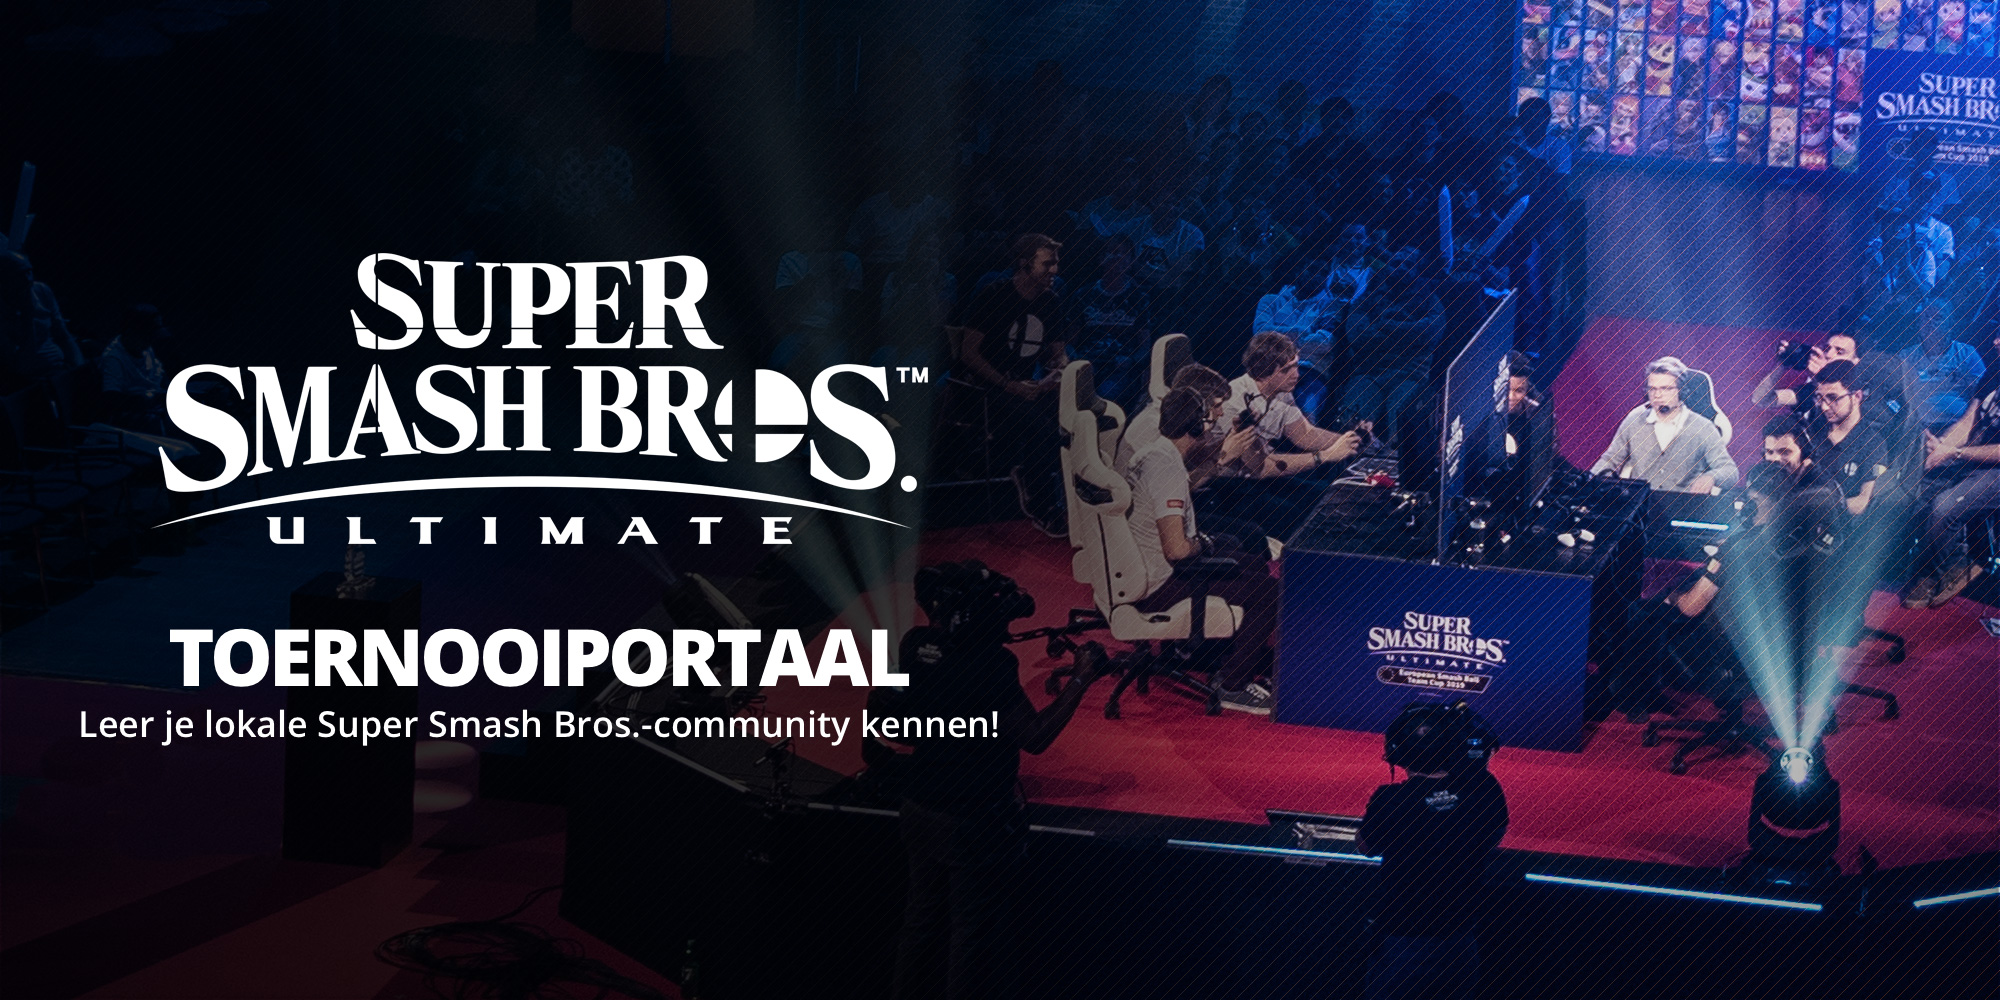 Leer je lokale Smash Bros.-community kennen met het Super Smash Bros. Ultimate-toernooiportaal!